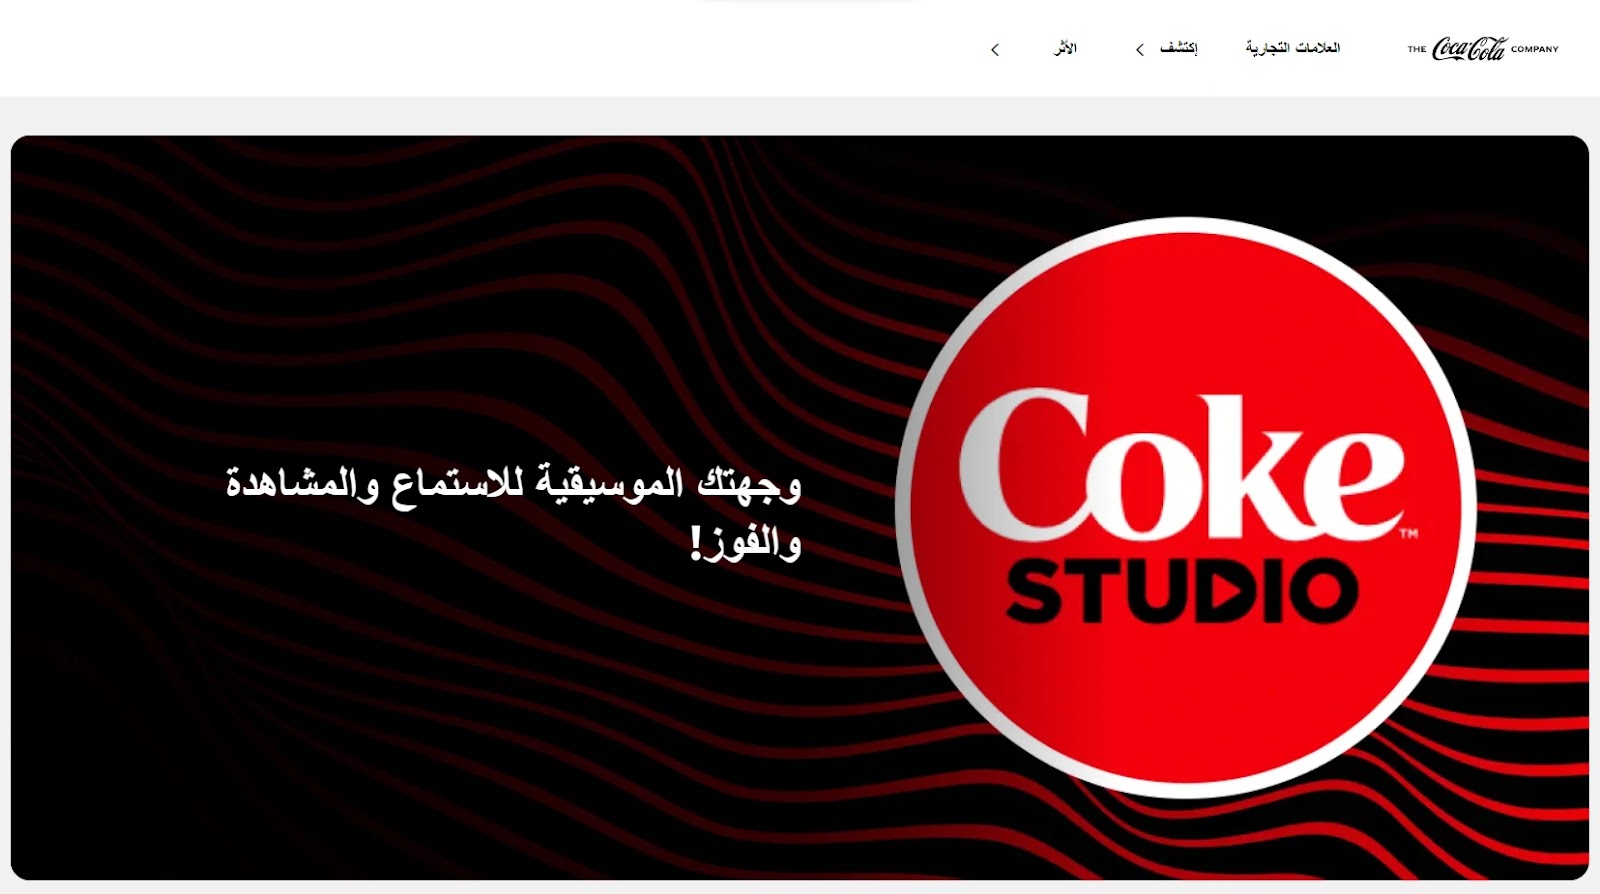 Coca-Cola’s homepage in Algeria